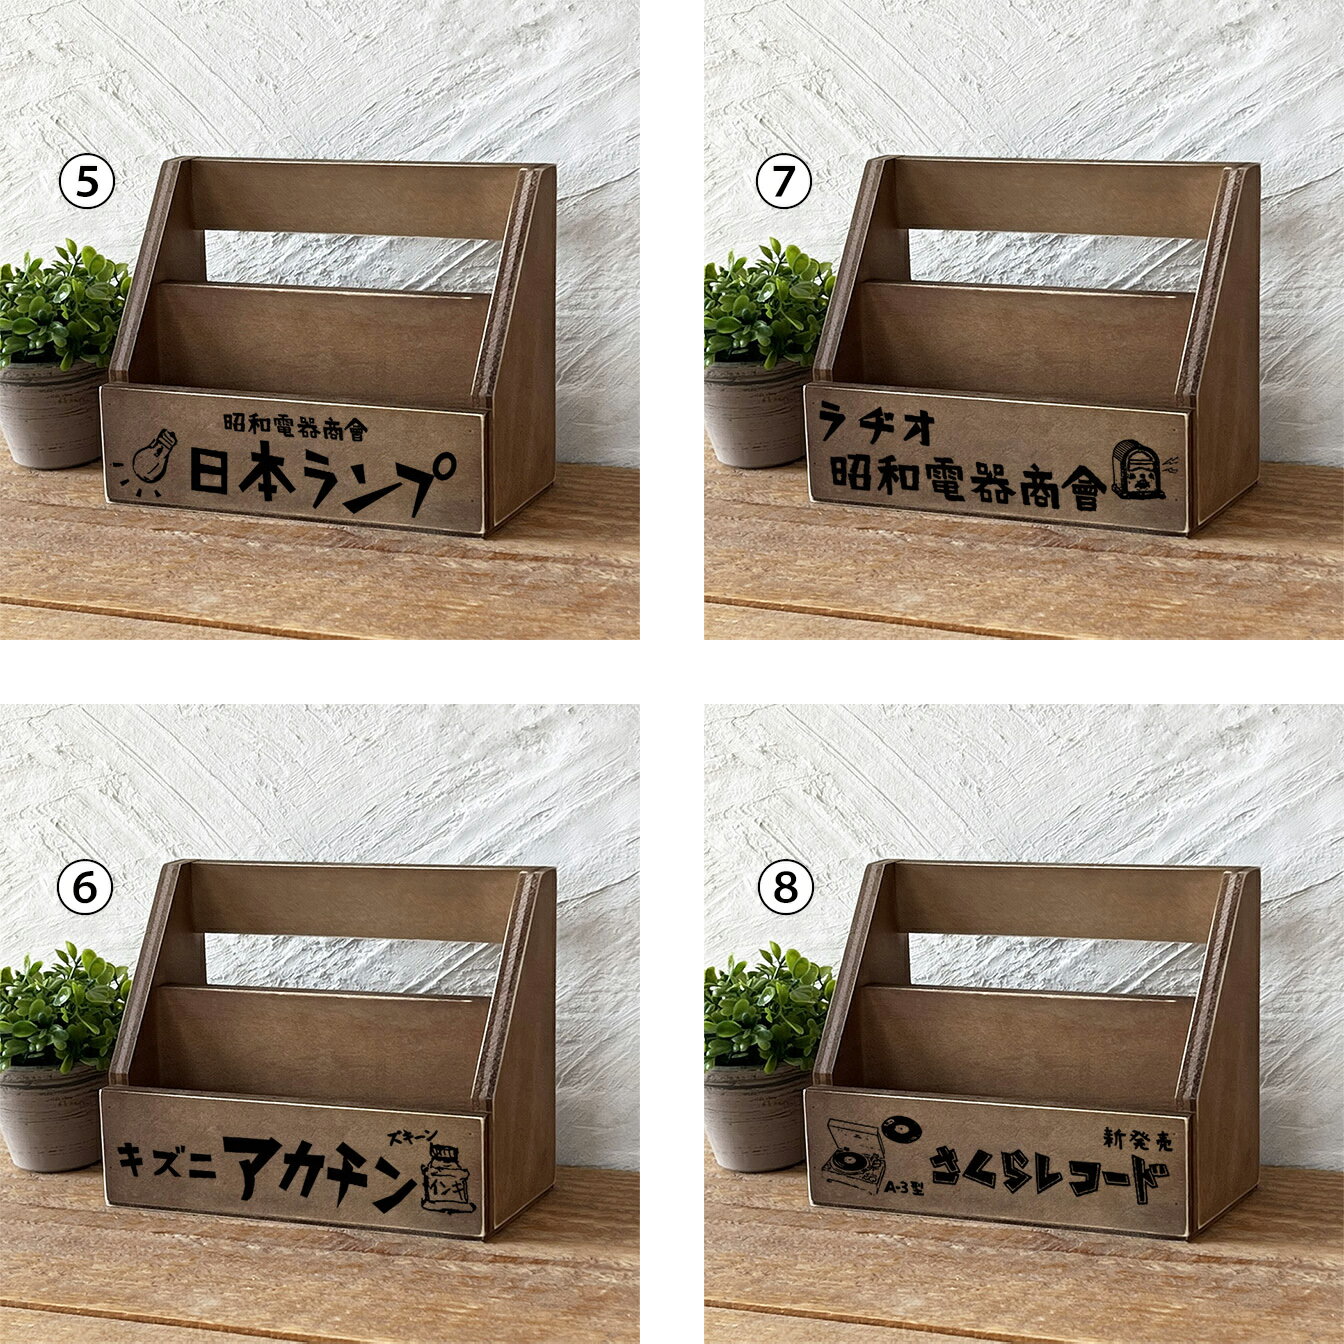 昭和レトロ レターラック レトロ雑貨 はがき 手紙 壁掛け レタースタンド 木製 BREA 3